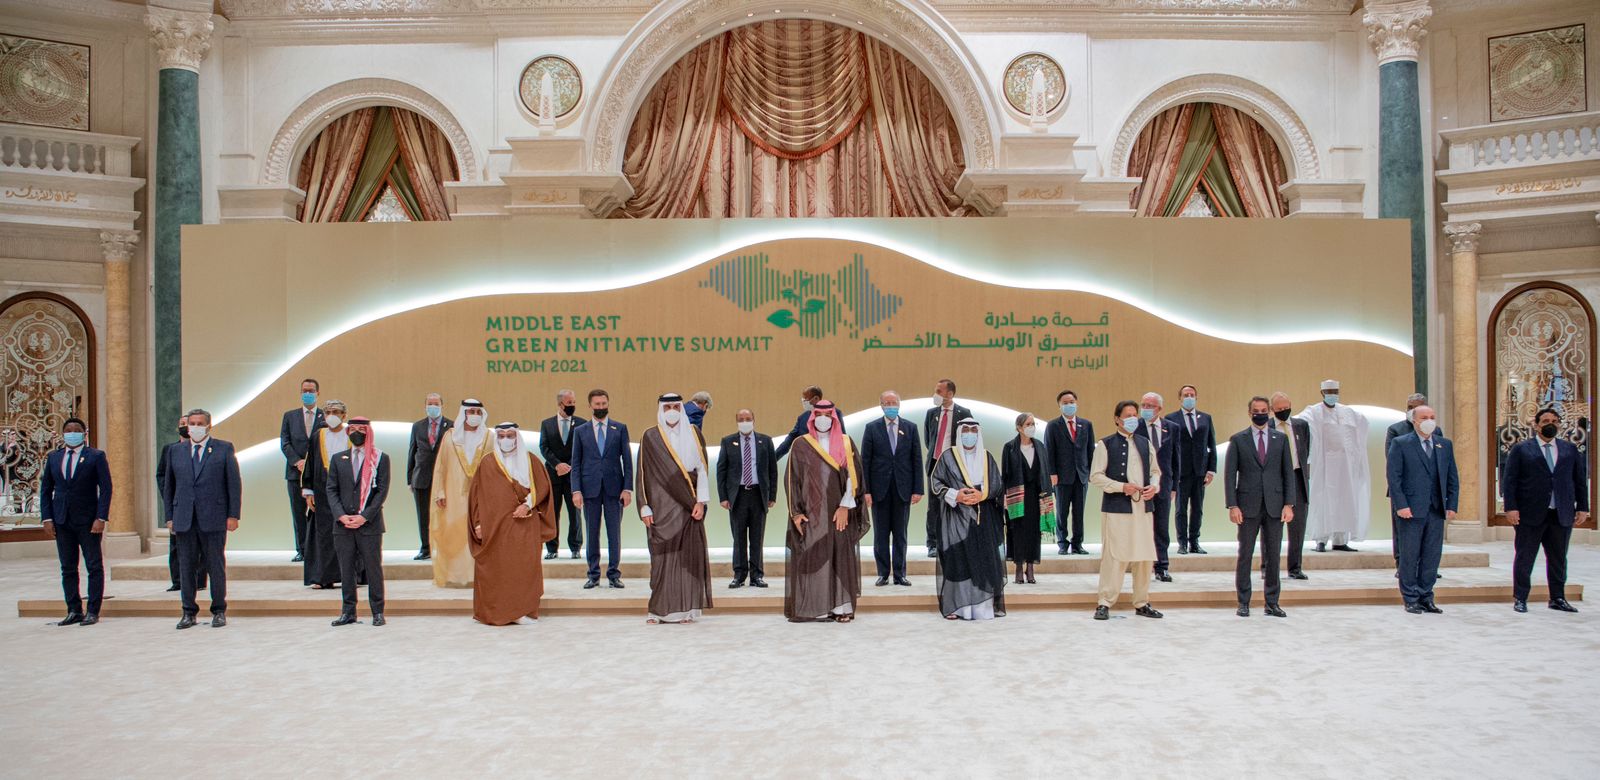 ولي العهد يتوسط القادة والرؤساء المشاركين في قمة مبادرة الشرق الأوسط الأخضر